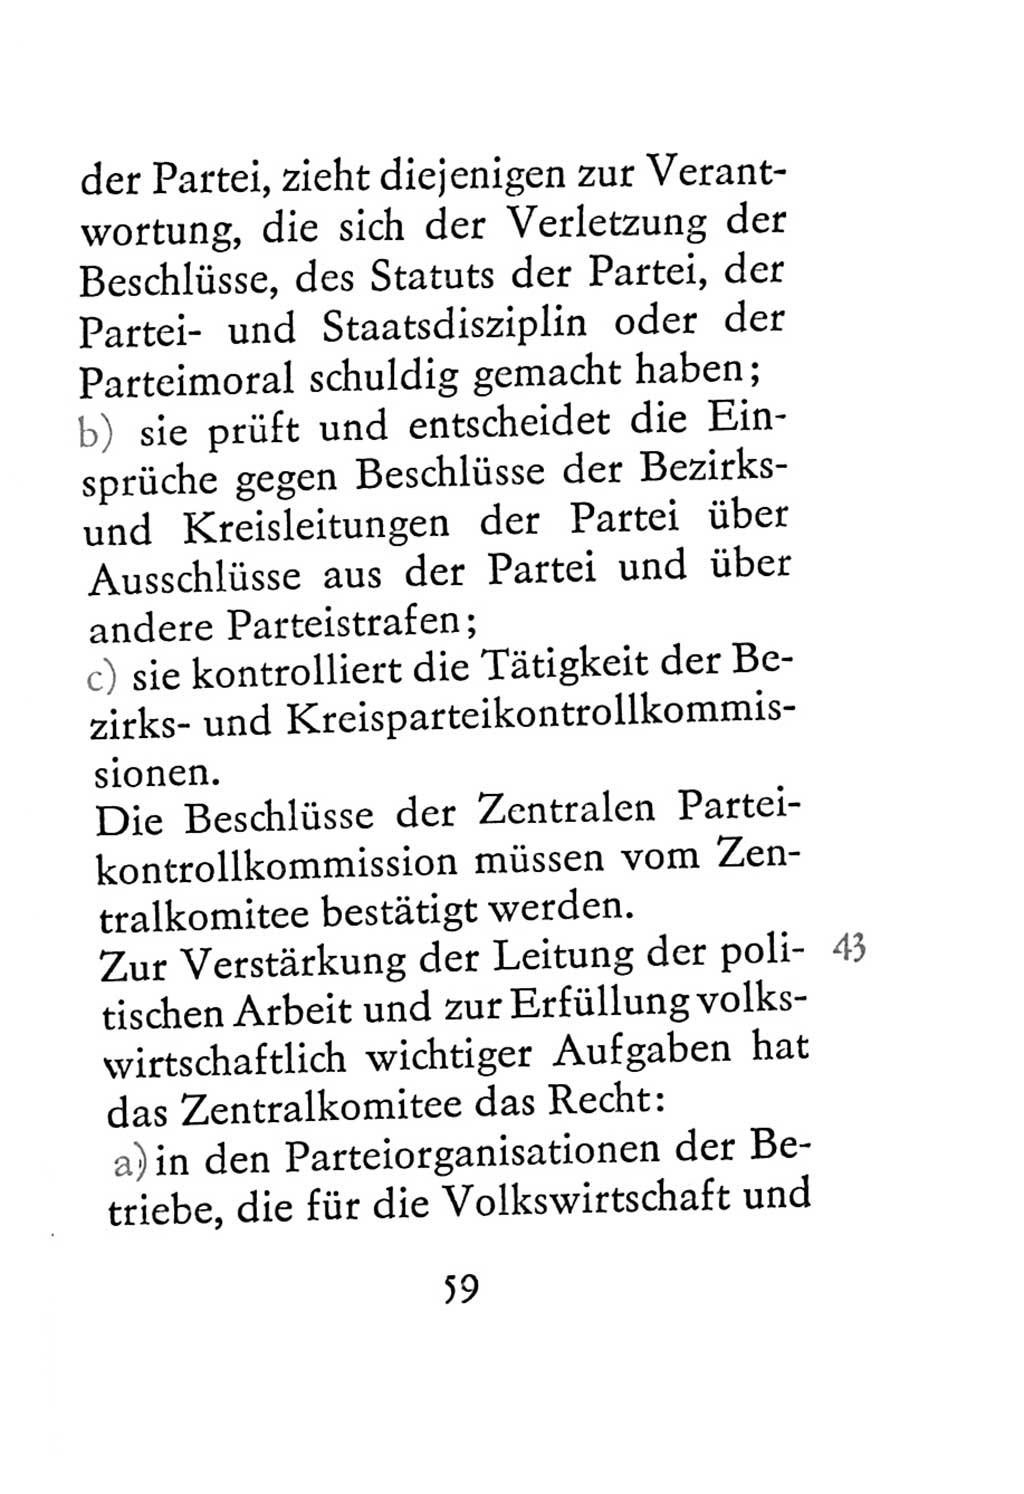 Statut der Sozialistischen Einheitspartei Deutschlands (SED) 1967, Seite 59 (St. SED DDR 1967, S. 59)